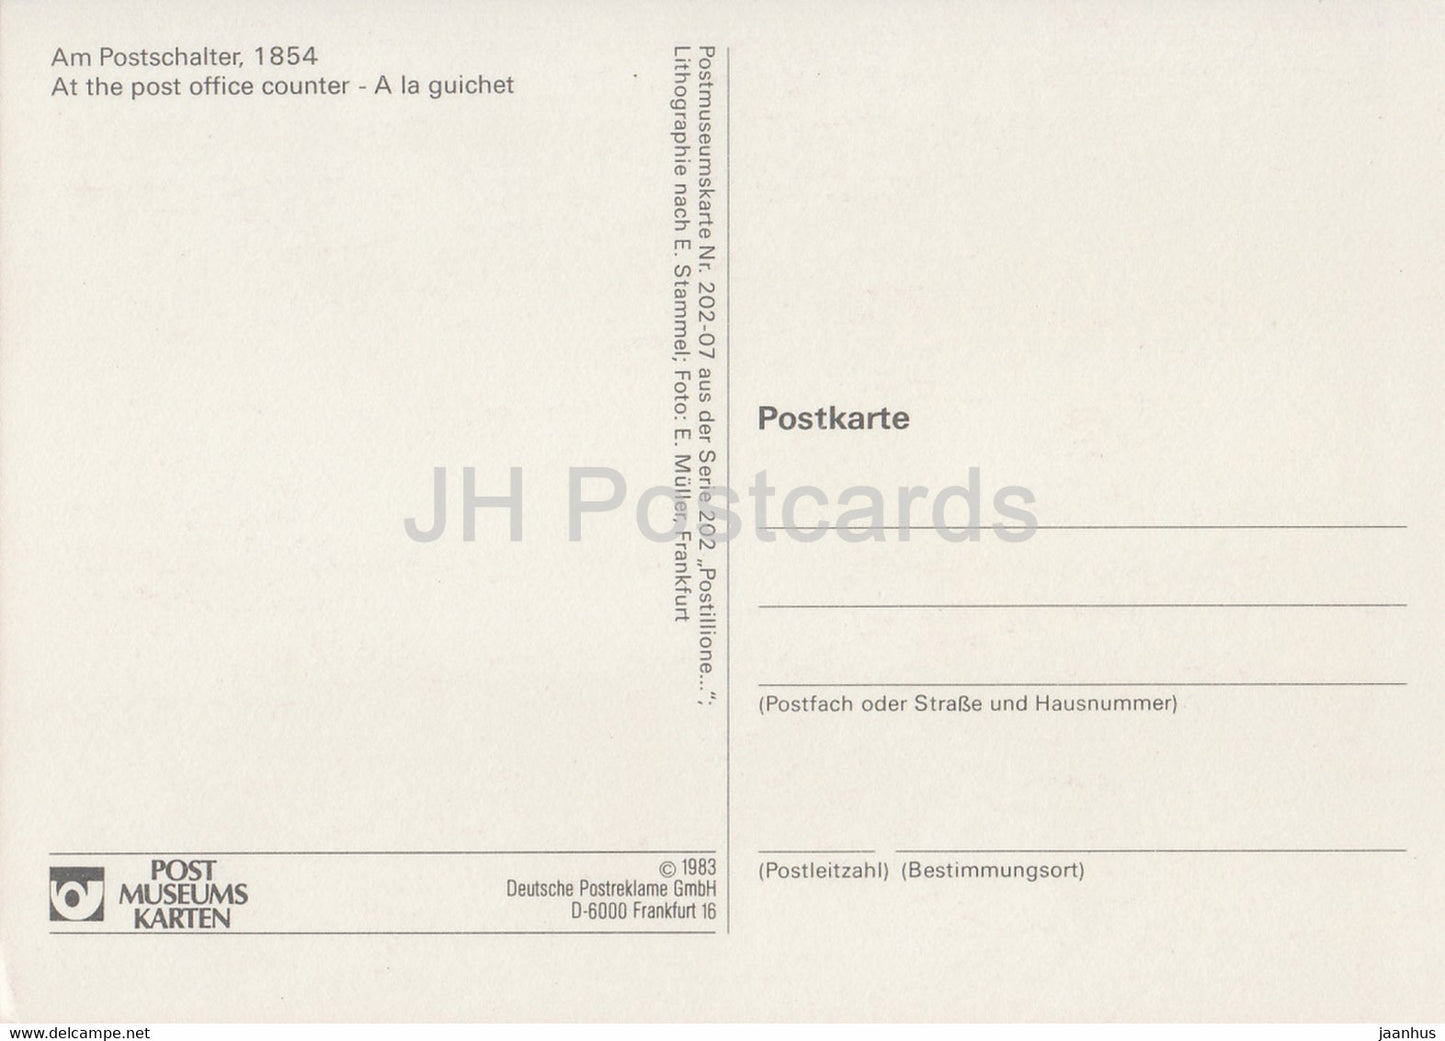 Am Postschalter – Postboten – Postdienst – 1983 – Deutschland – unbenutzt